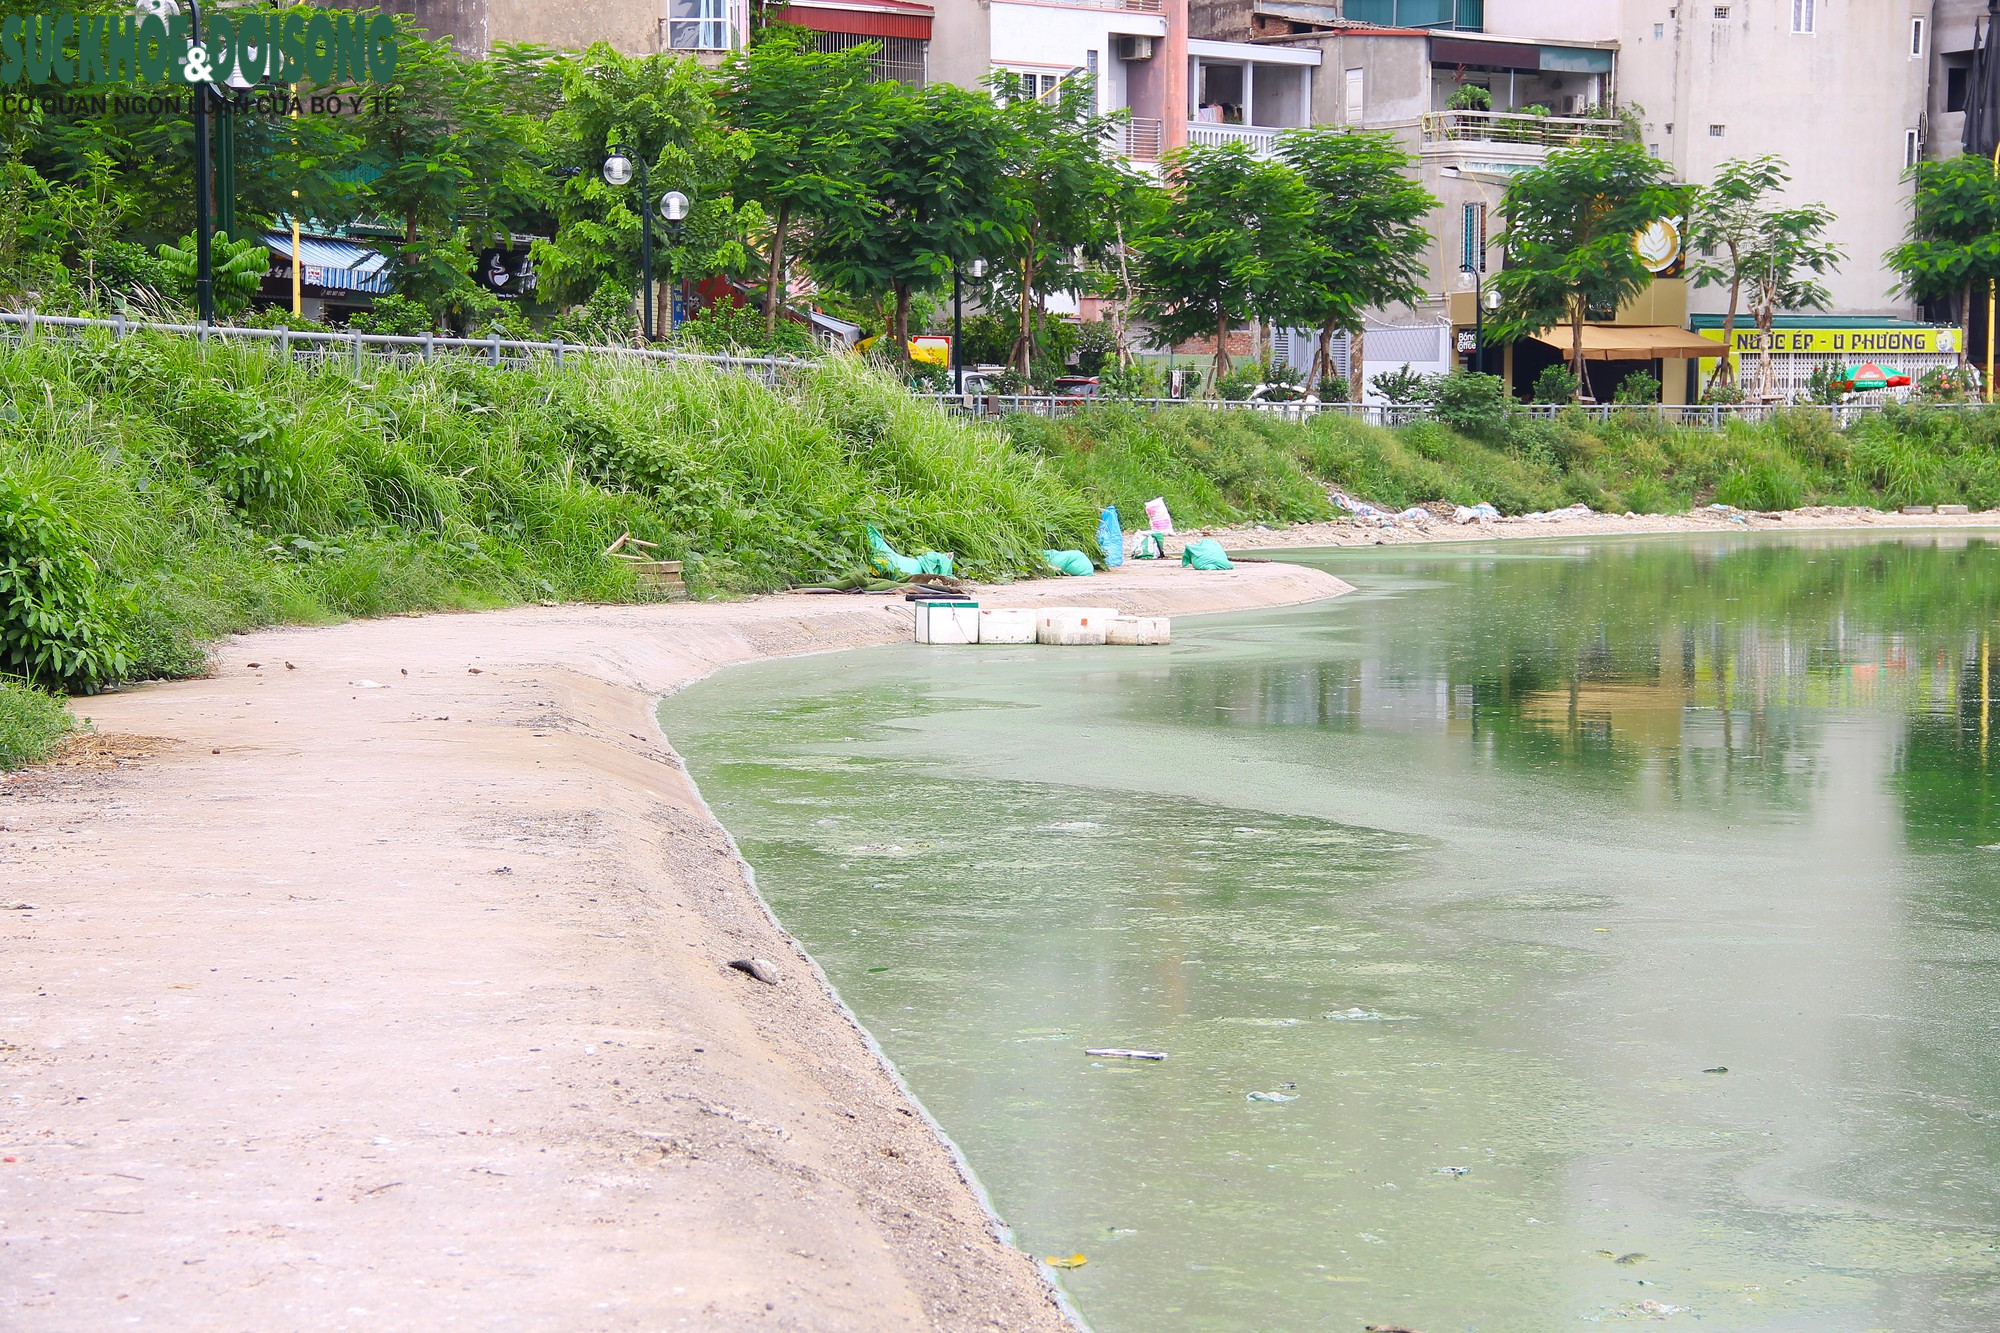 Hồ nước tại trung tâm Hà Nội ô nhiễm, mặt hồ nổi mảng bám, nước bốc mùi - Ảnh 2.